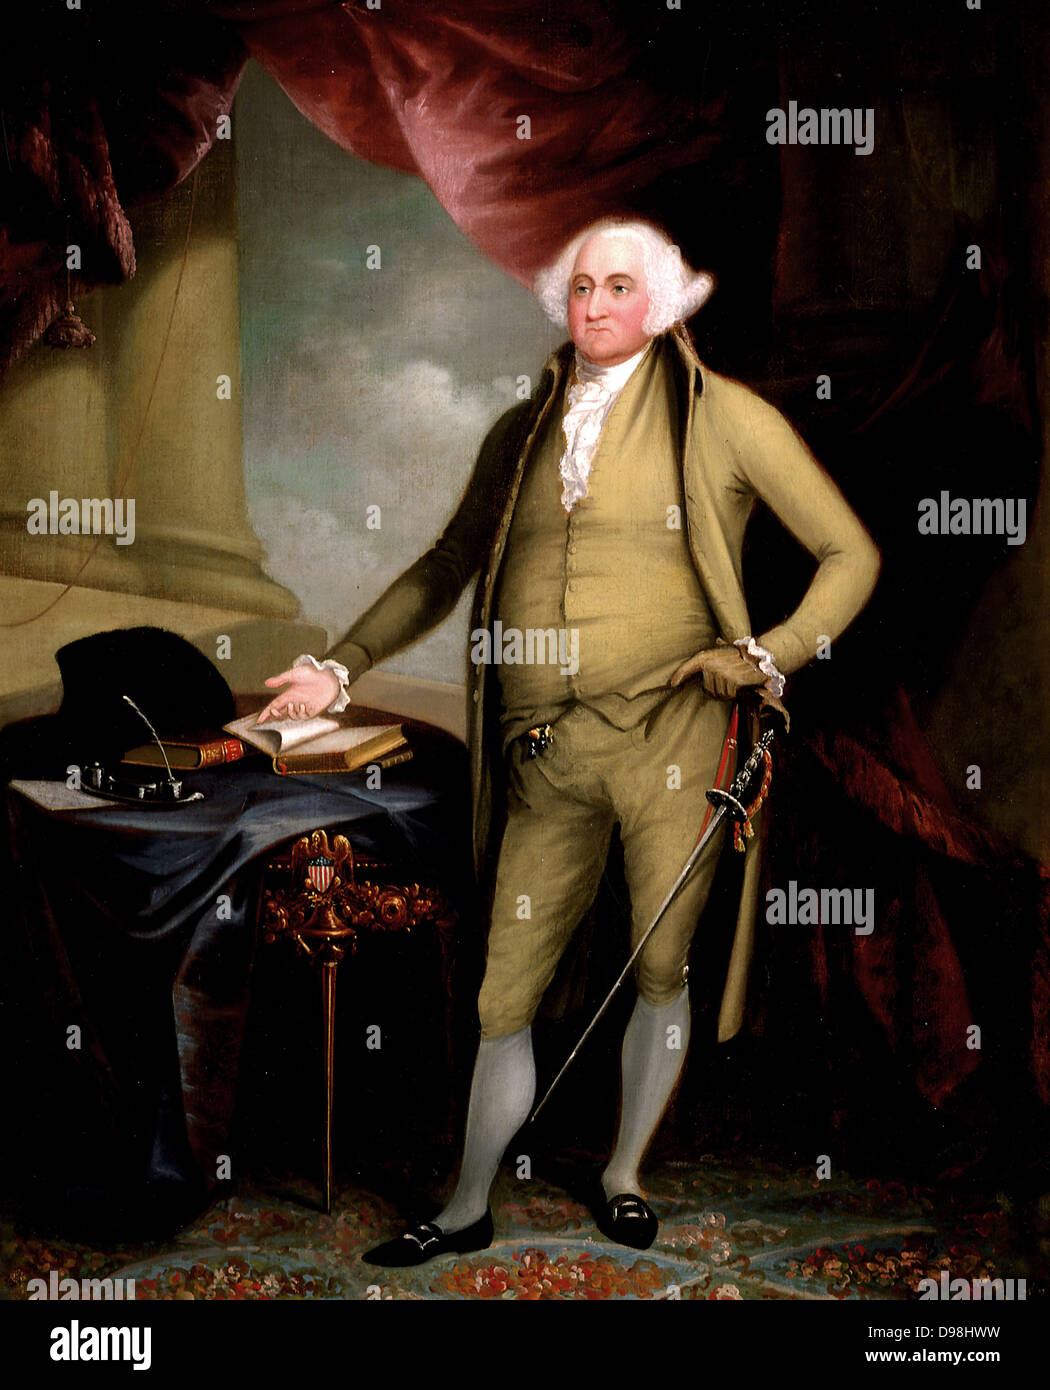 John Adams (Oktober 30, 1735 - Juli 4, 1826) war ein US-amerikanischer Staatsmann, Diplomat und politische Theoretiker. Ein führender Verfechter der Unabhängigkeit im Jahre 1776, war er der zweite Präsident der Vereinigten Staaten (1797-1801). Porträt von William Winstanley, 1798. Stockfoto